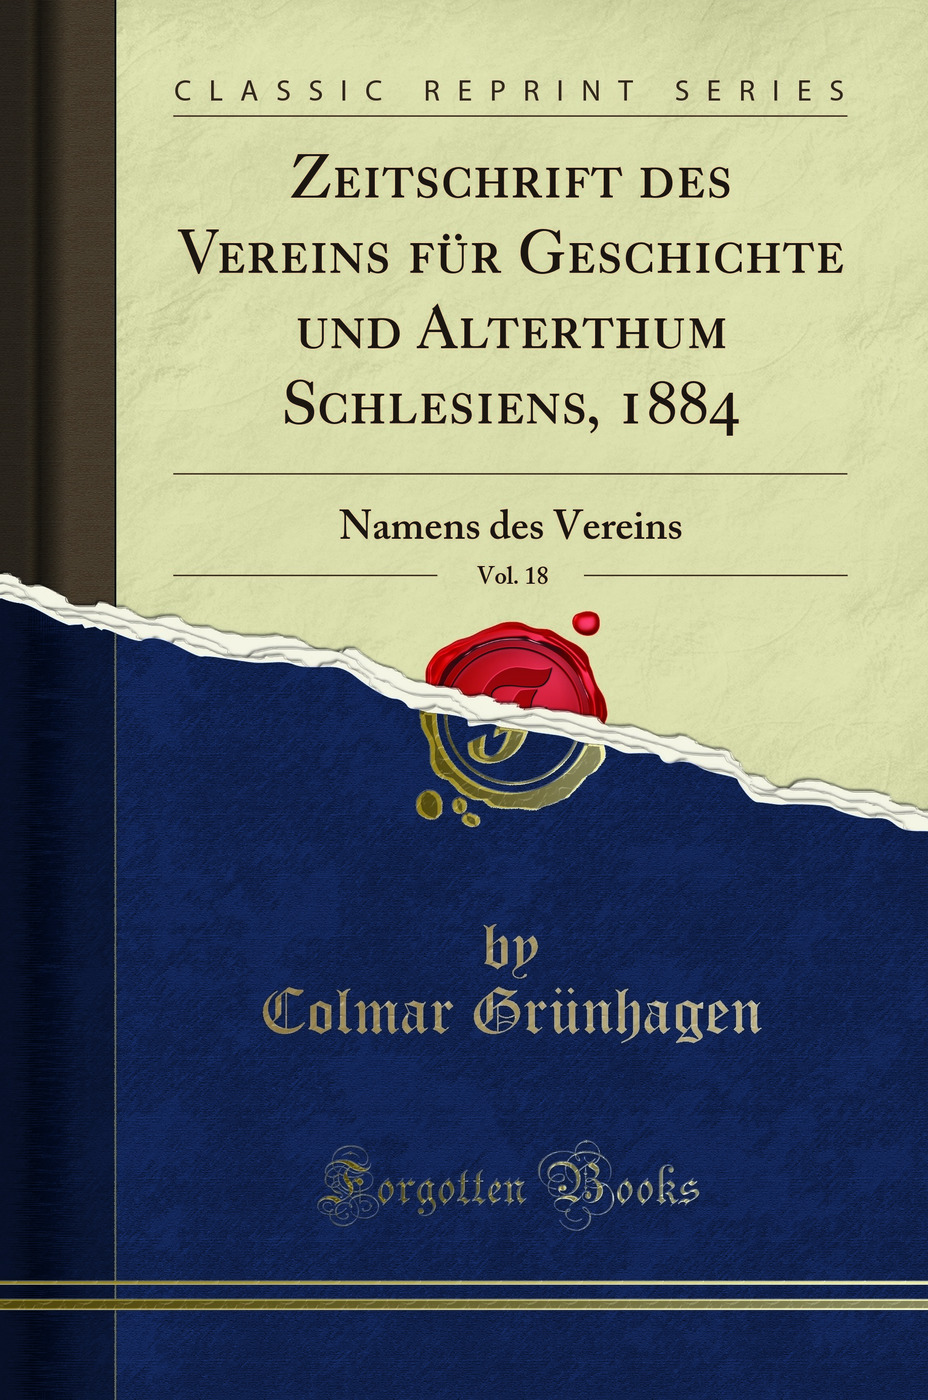 Zeitschrift des Vereins fÃ¼r Geschichte und Alterthum Schlesiens, 1884, Vol. 18 - Colmar GrÃ¼nhagen